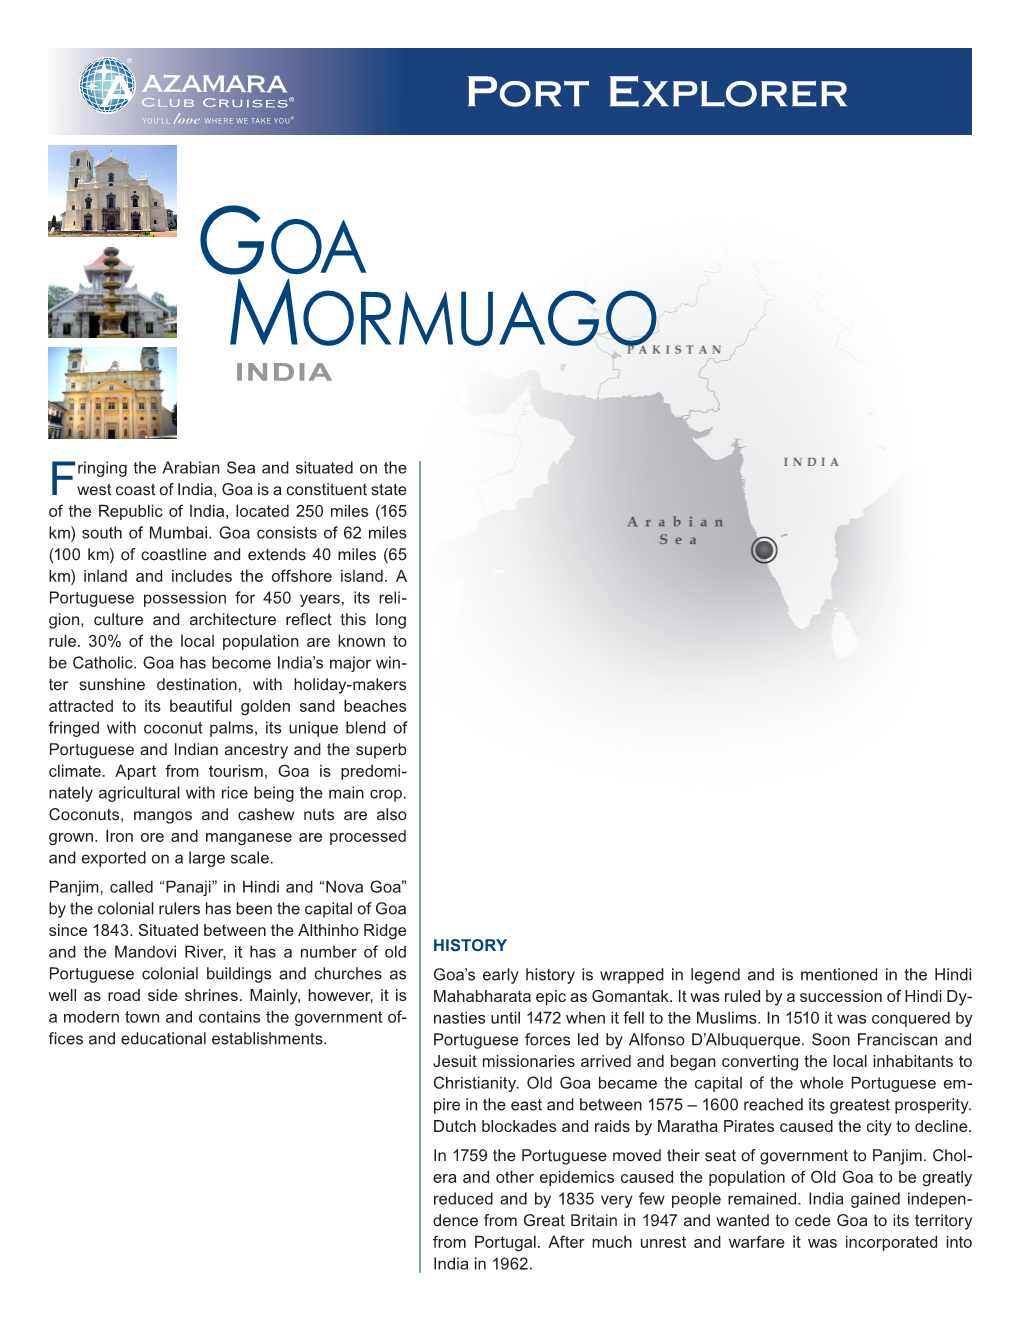 Goa Mormuago India